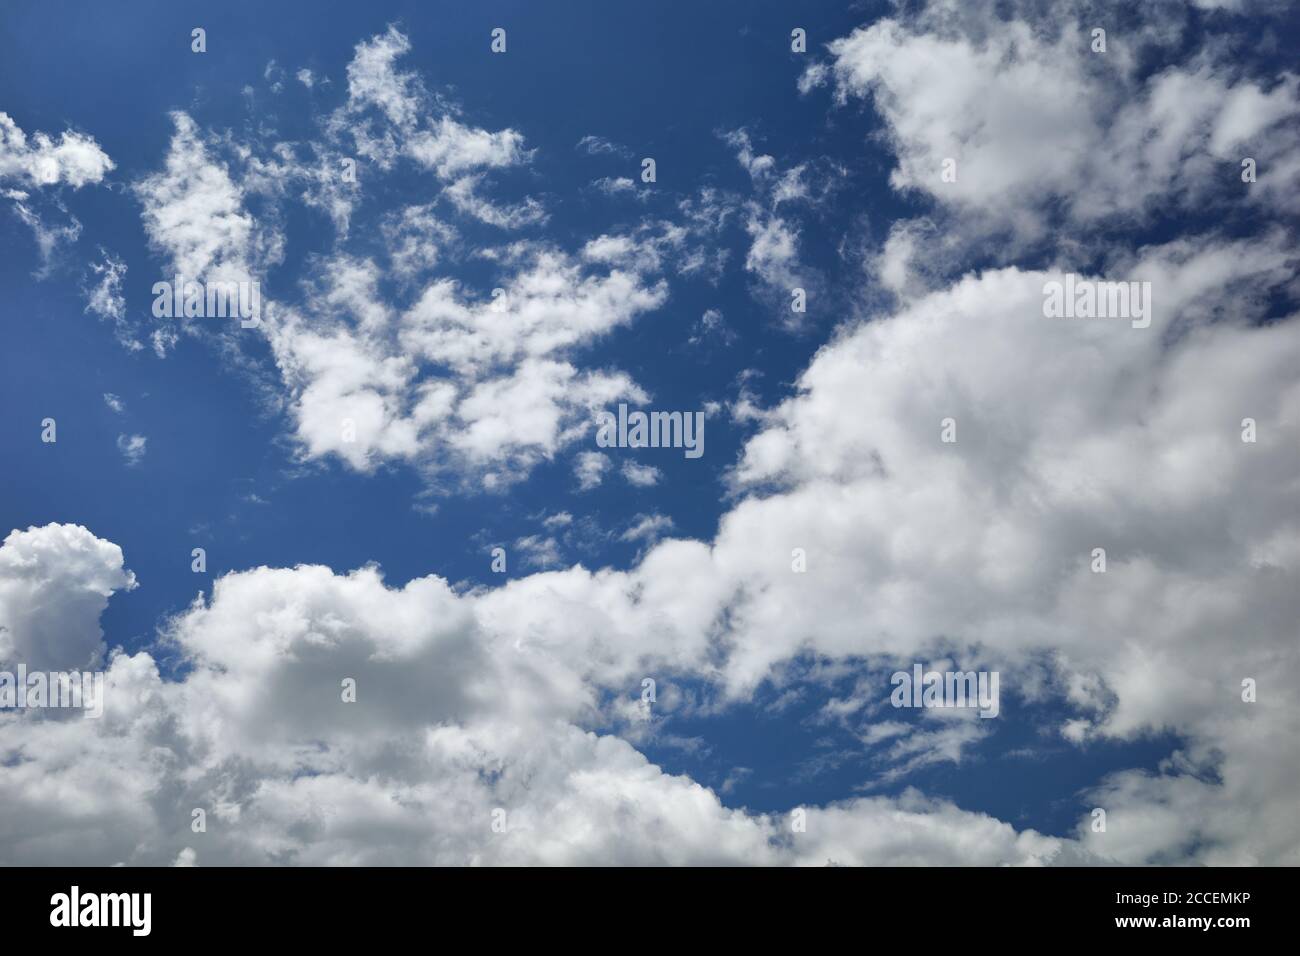 Bizarre Kumuluswolken schweben im blauen Himmel. Himmel im Sonnenlicht. Hintergrund für Vorhersage und Meteorologie Illustration. Stockfoto